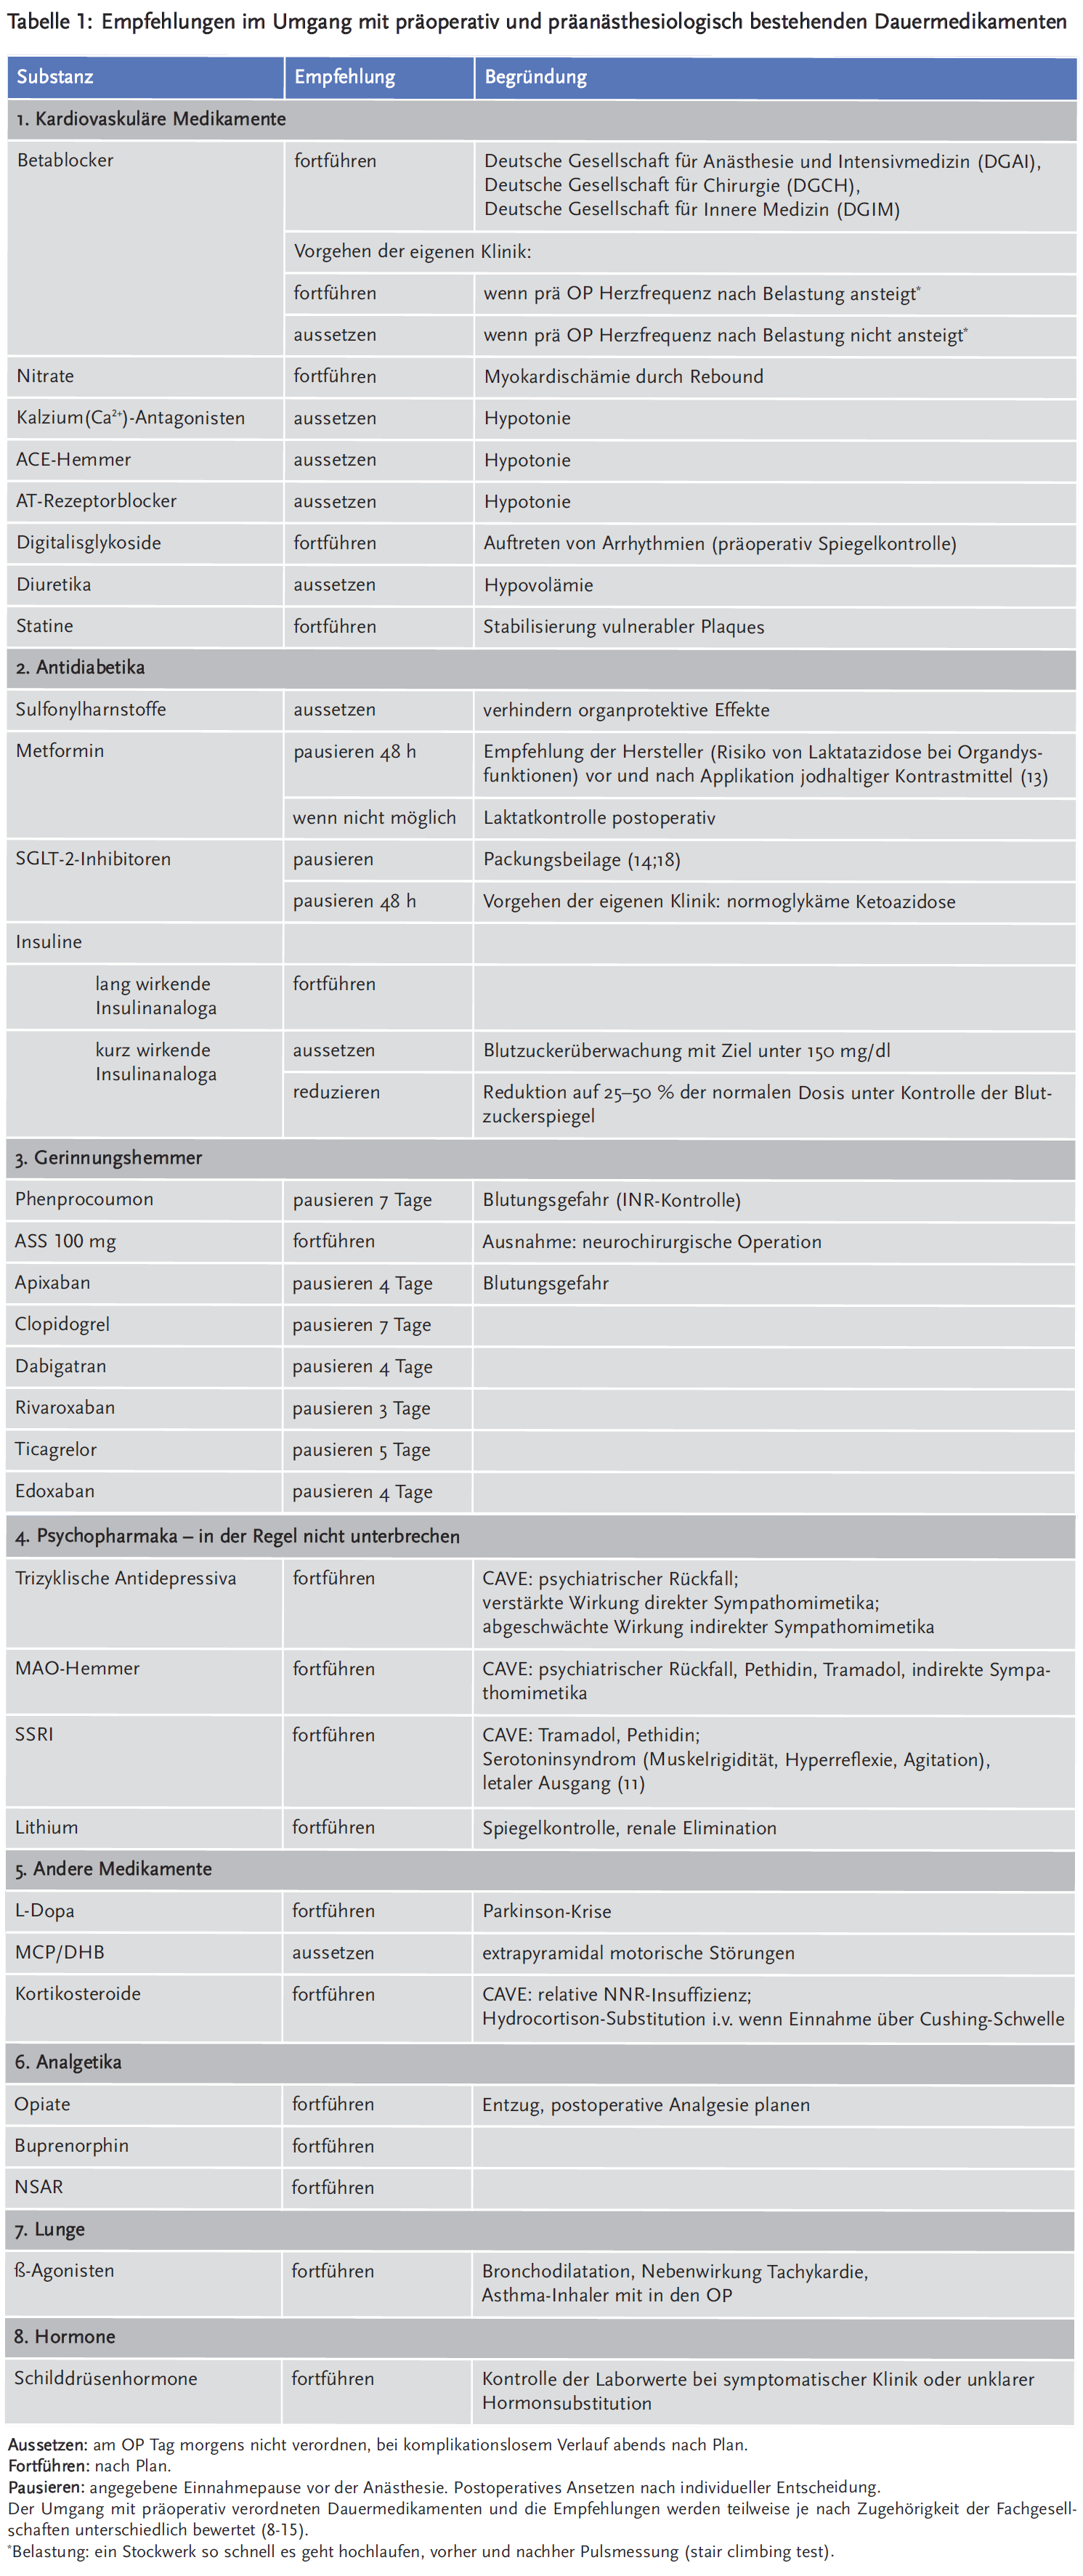 Tabelle 1: Empfehlungen im Umgang mit präoperativ und präanästhesiologisch bestehenden Dauermedikamenten